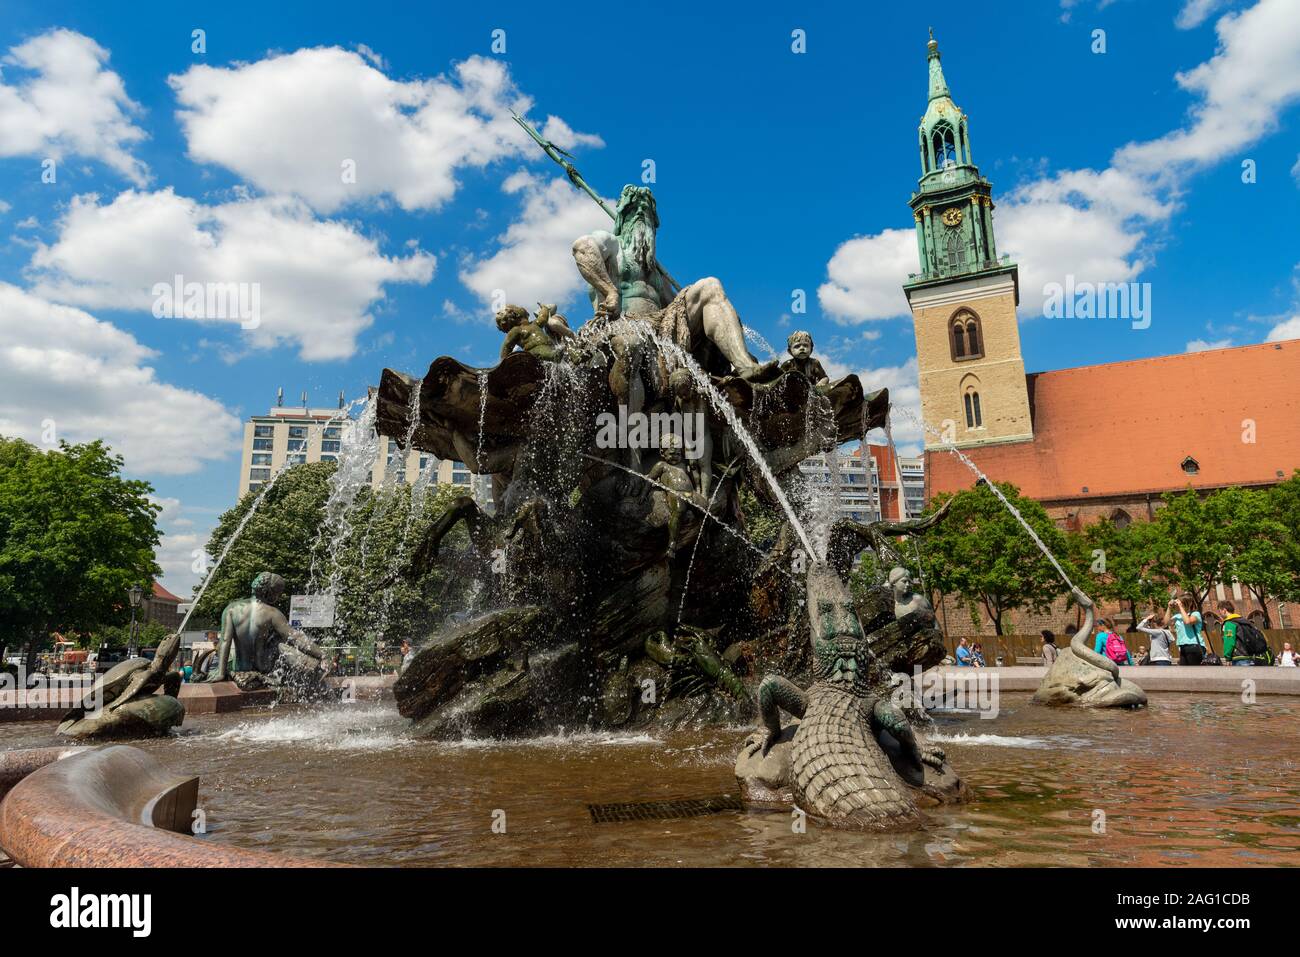 The Neptune Fountain or Neptunbrunnen, Berlin, Germany Stock Photo